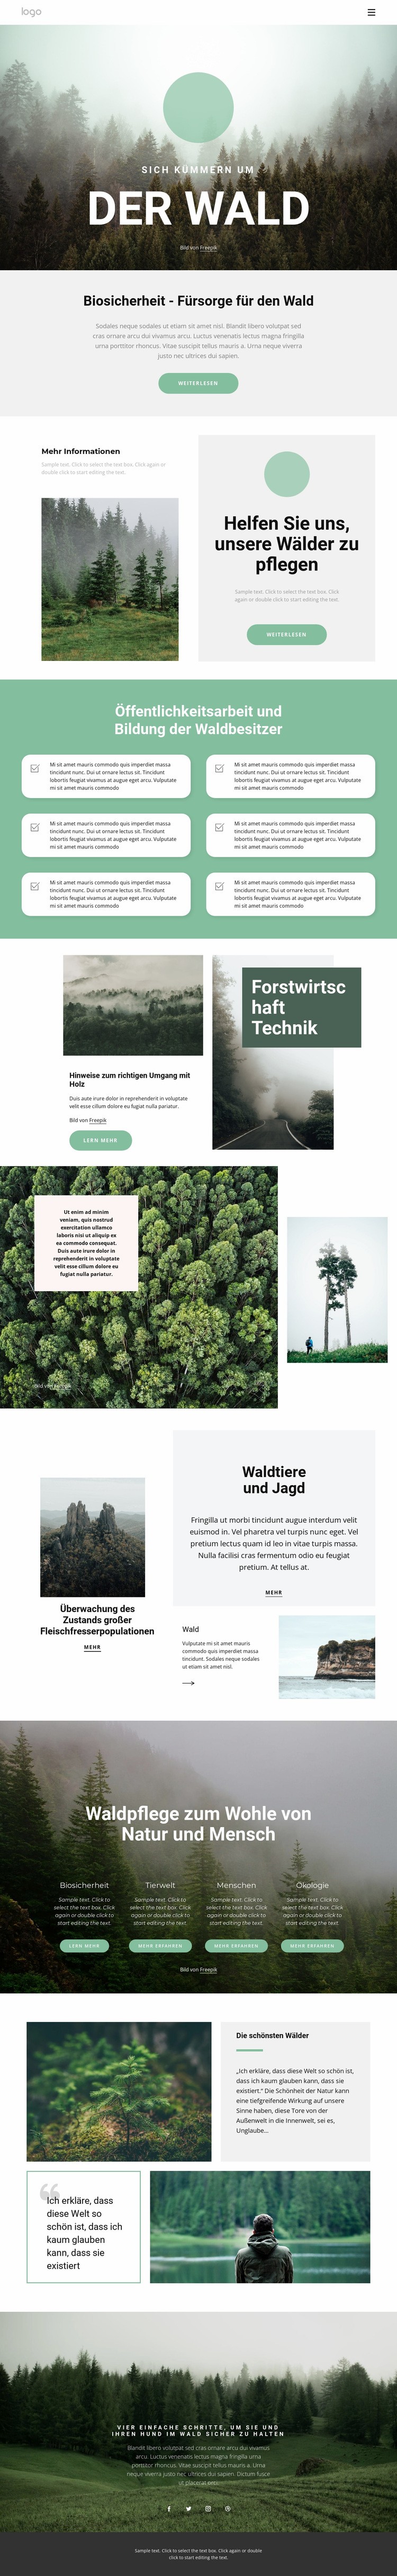 Pflege von Parks und Wäldern HTML5-Vorlage